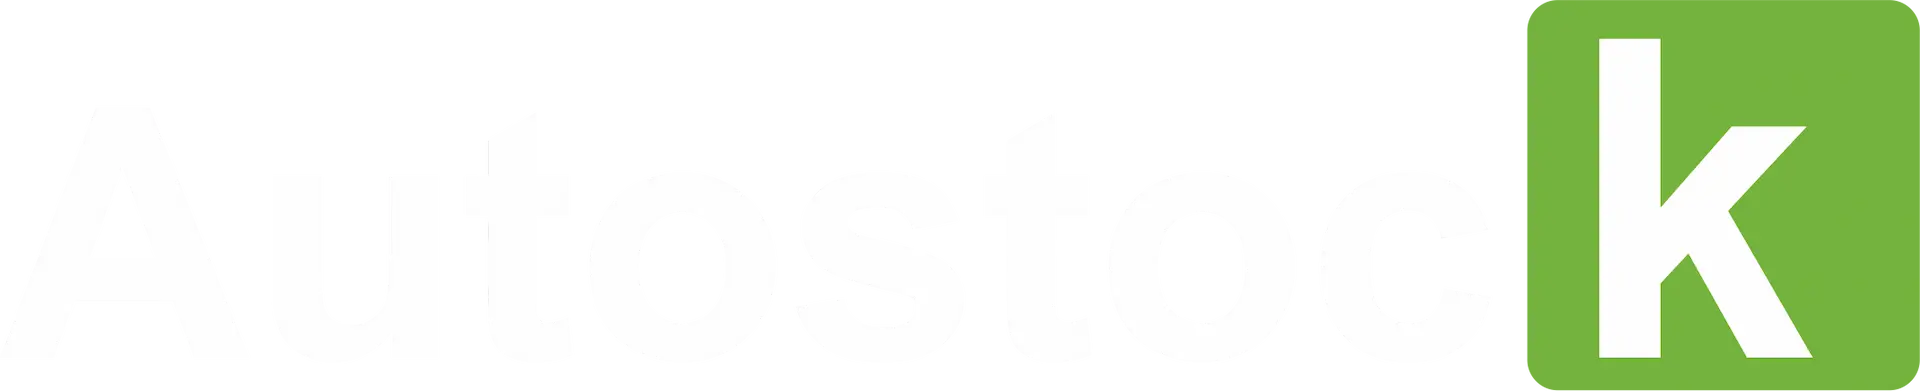 Autostock.pt logo - Início